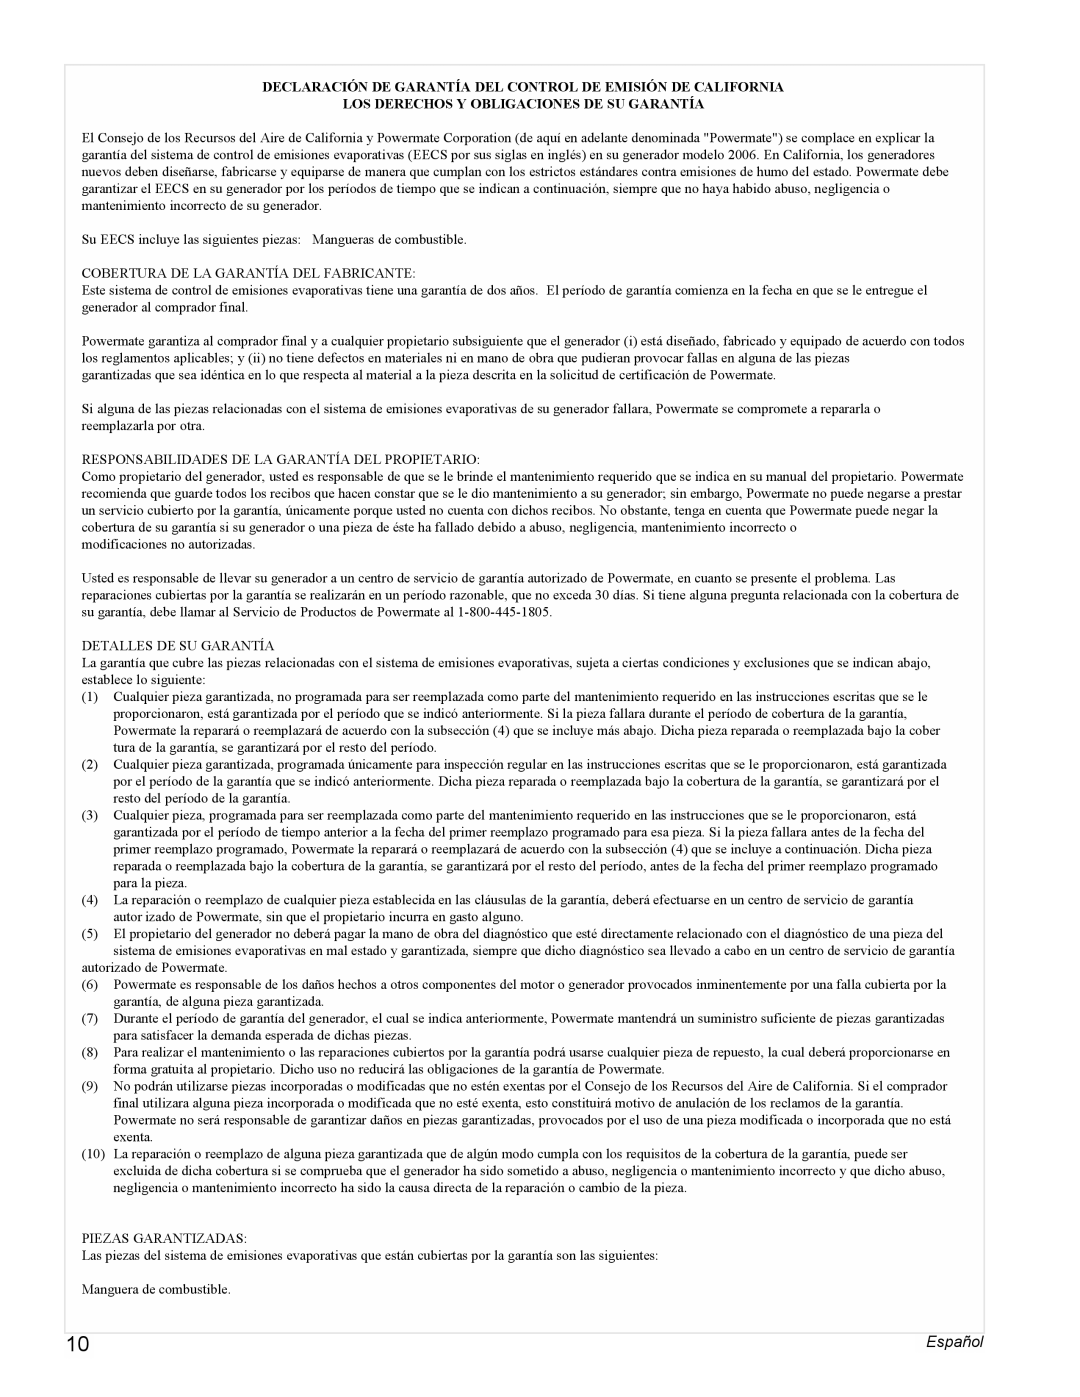 Powermate PMC497000 manual Los Derechos Y Obligaciones De Su Garantía, Español 